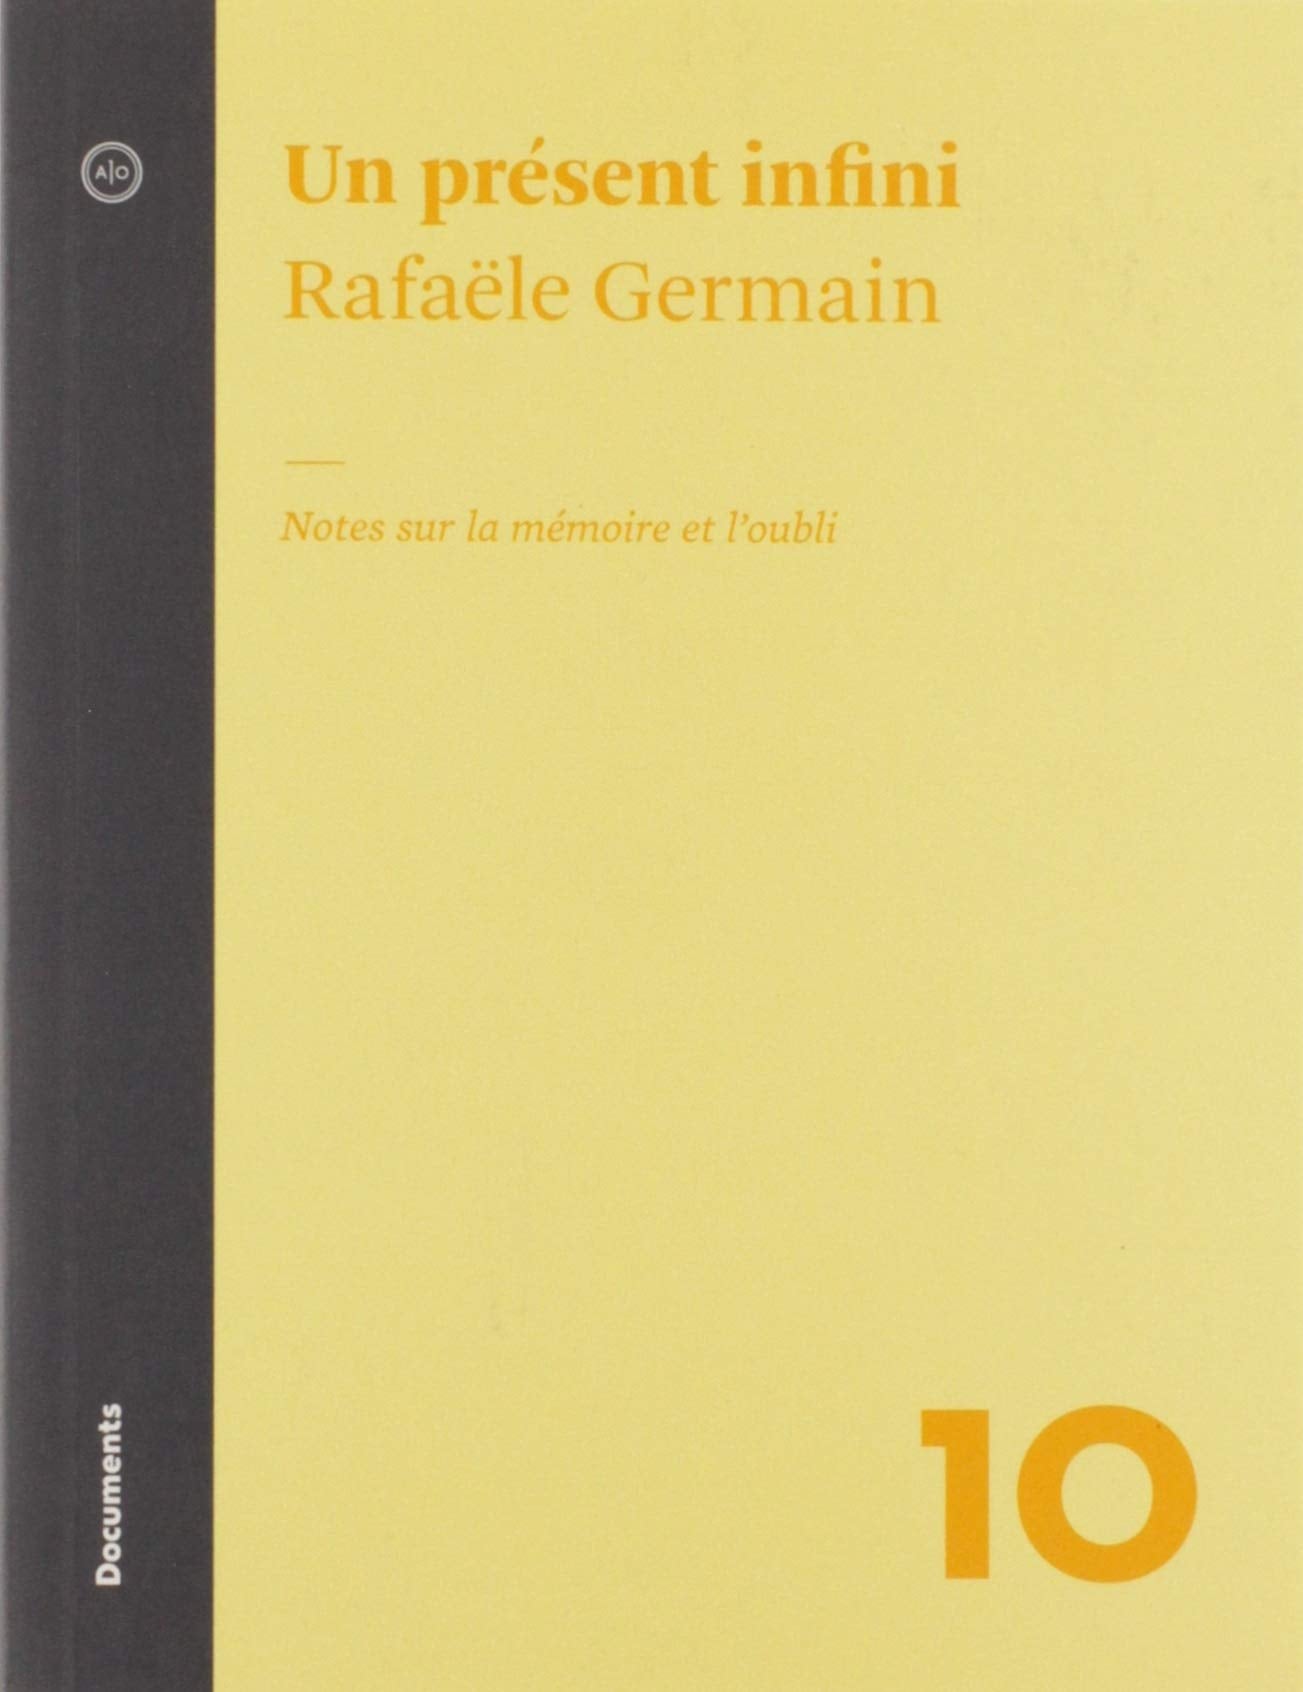 Livre ISBN 2897591943 Un présent infini : Note sur la mémoire et l'oubli (Rafaële Germain)